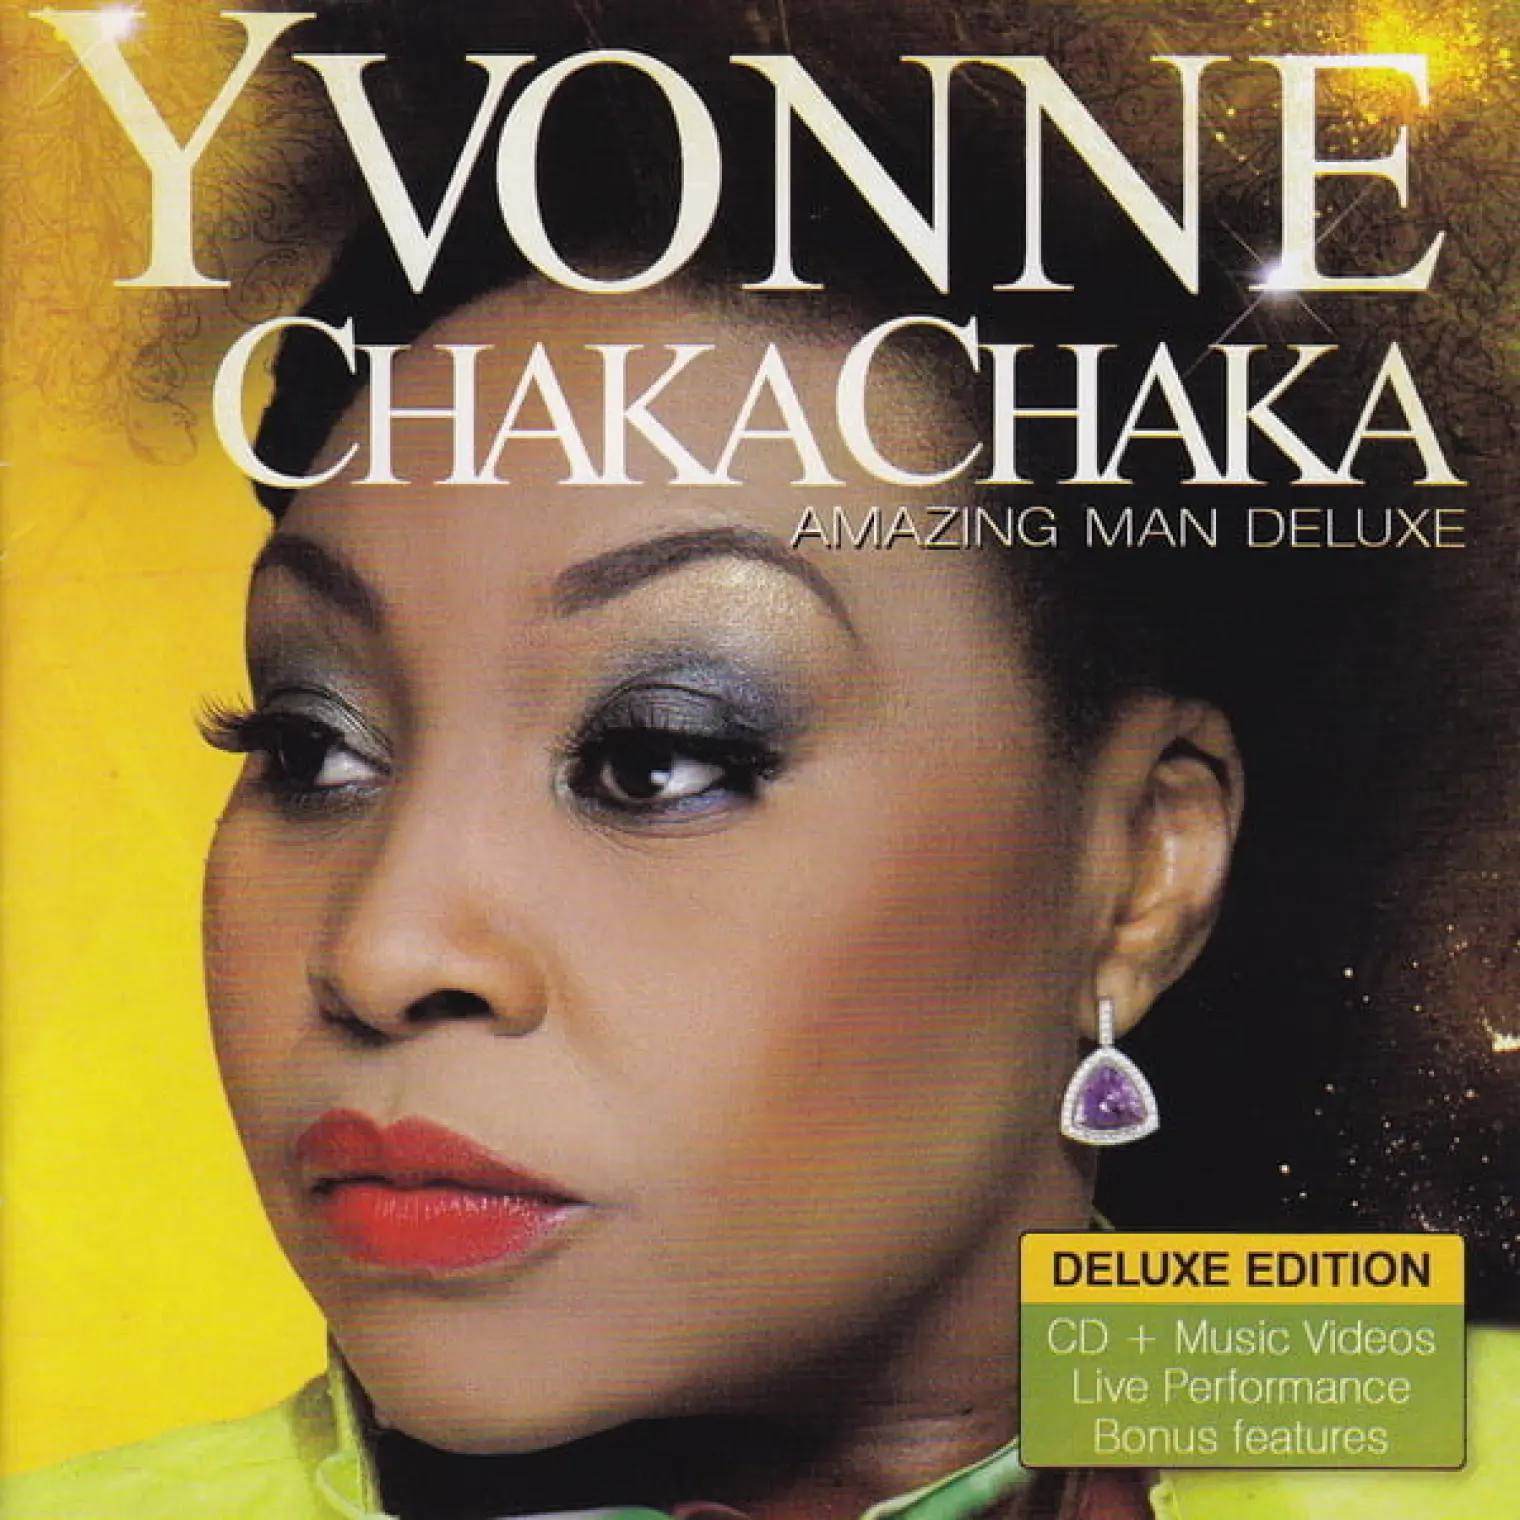 Amazing Man Deluxe -  Yvonne Chaka Chaka  